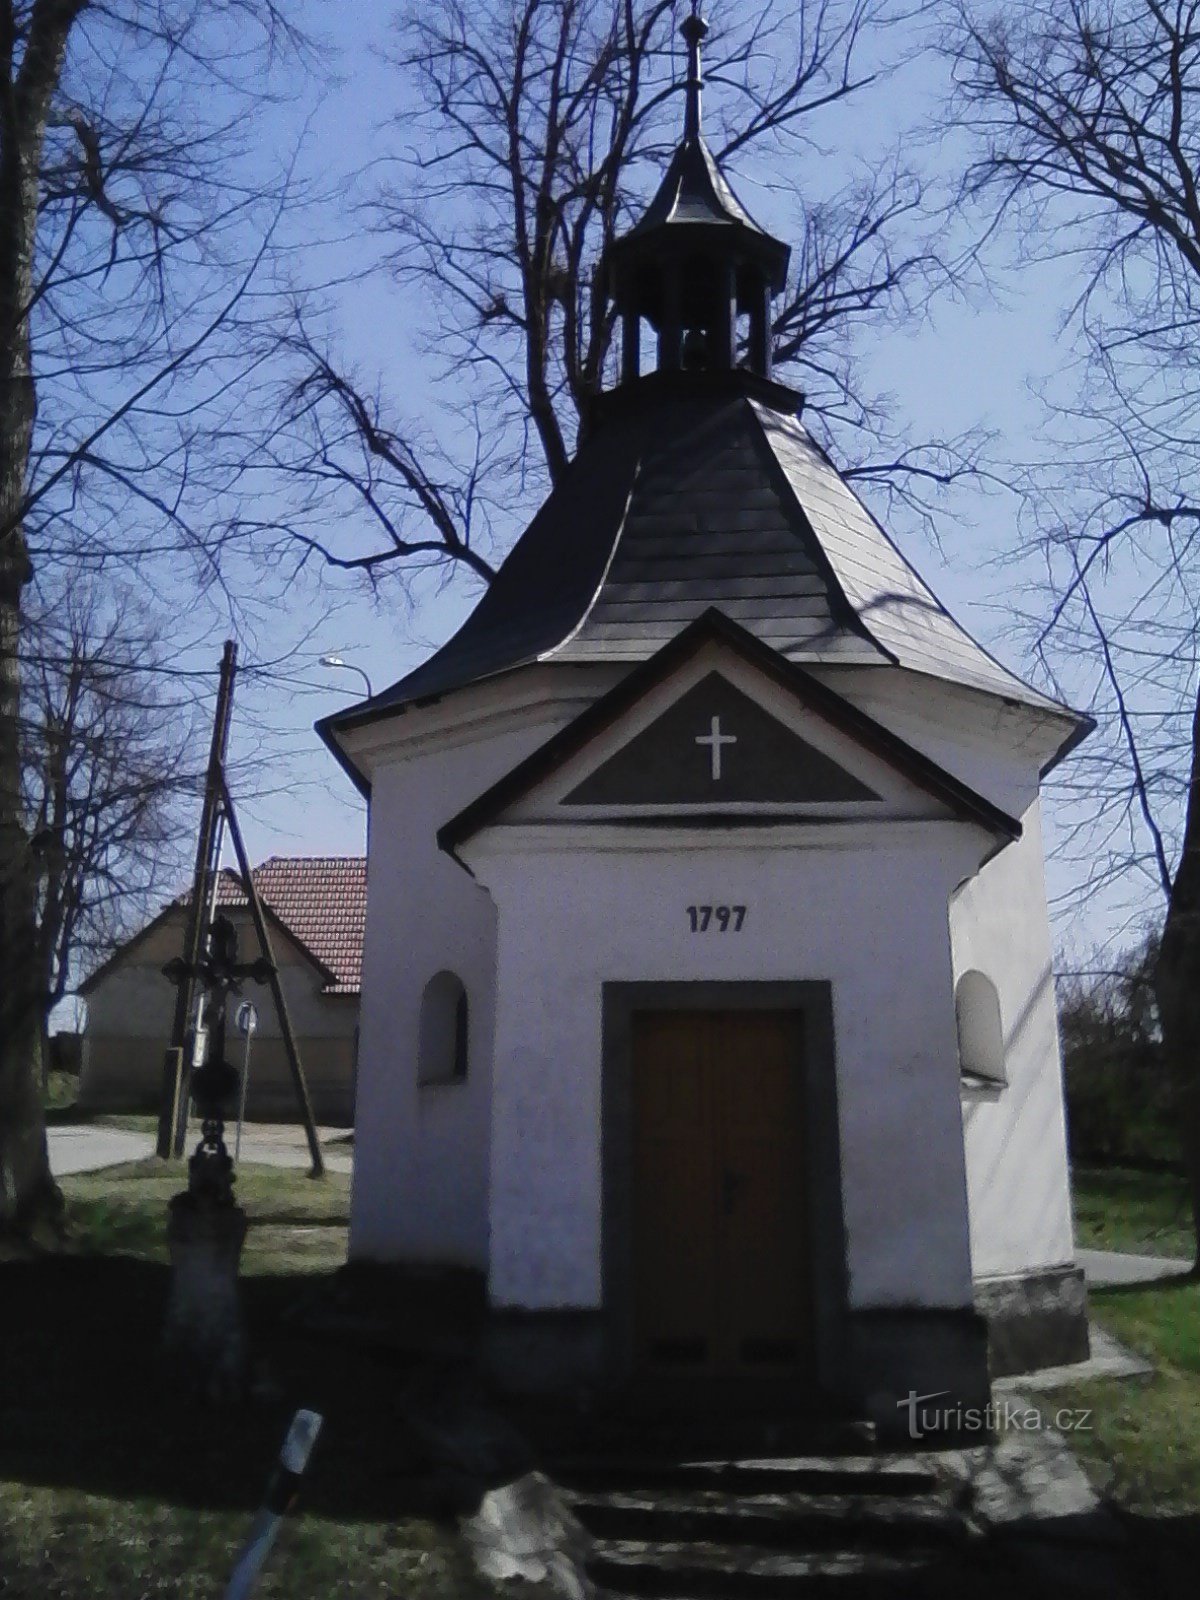 2. Litohošt 圣母玛利亚加冕的巴洛克式教堂。